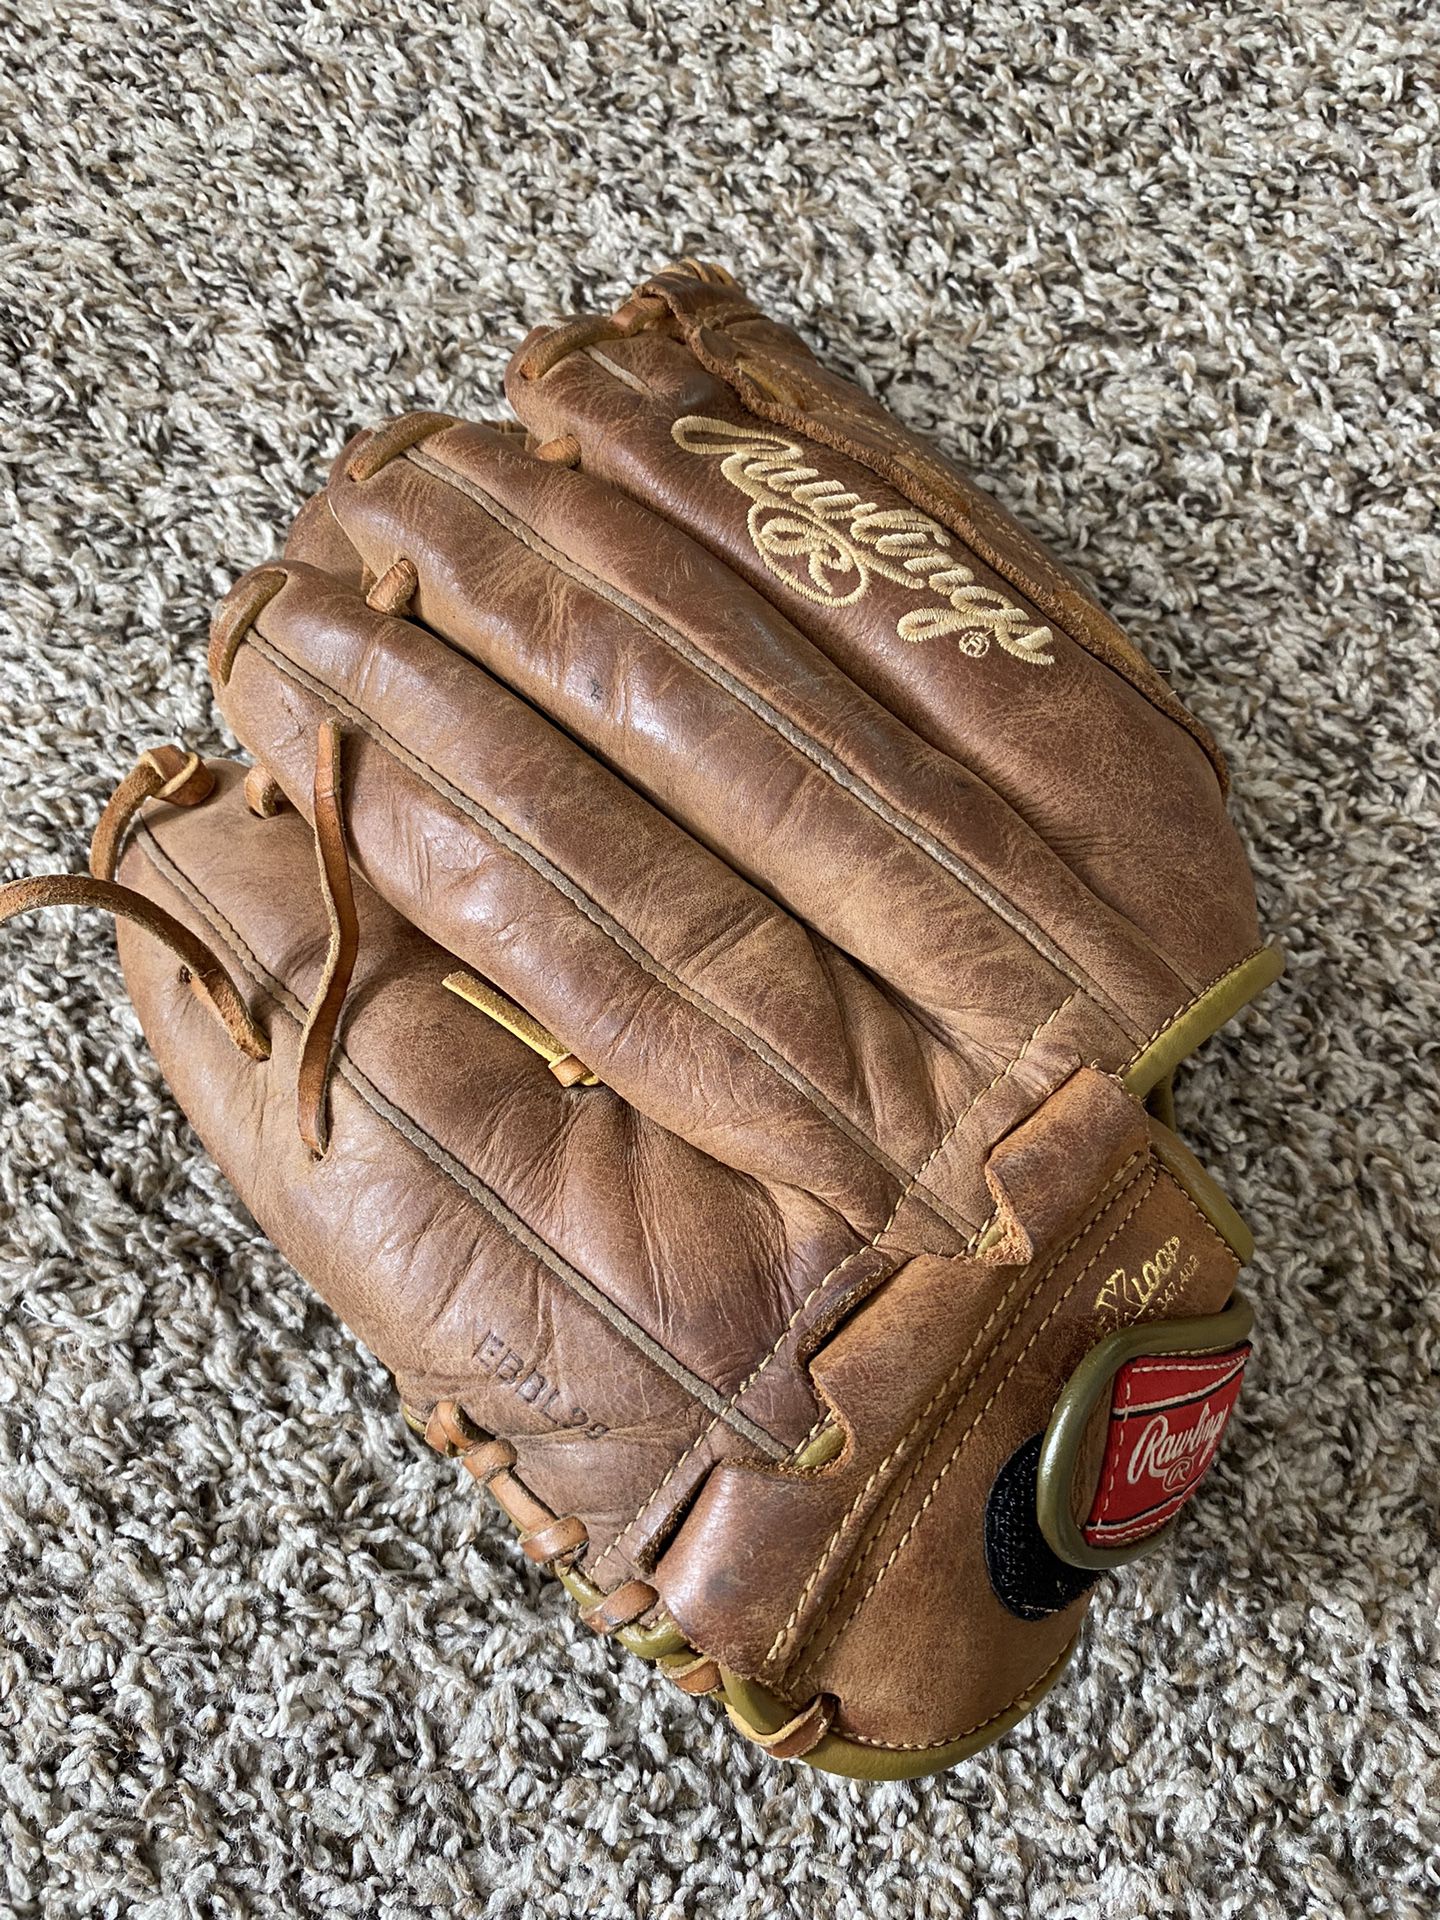 Baseball Glove 12.5” Rawlings